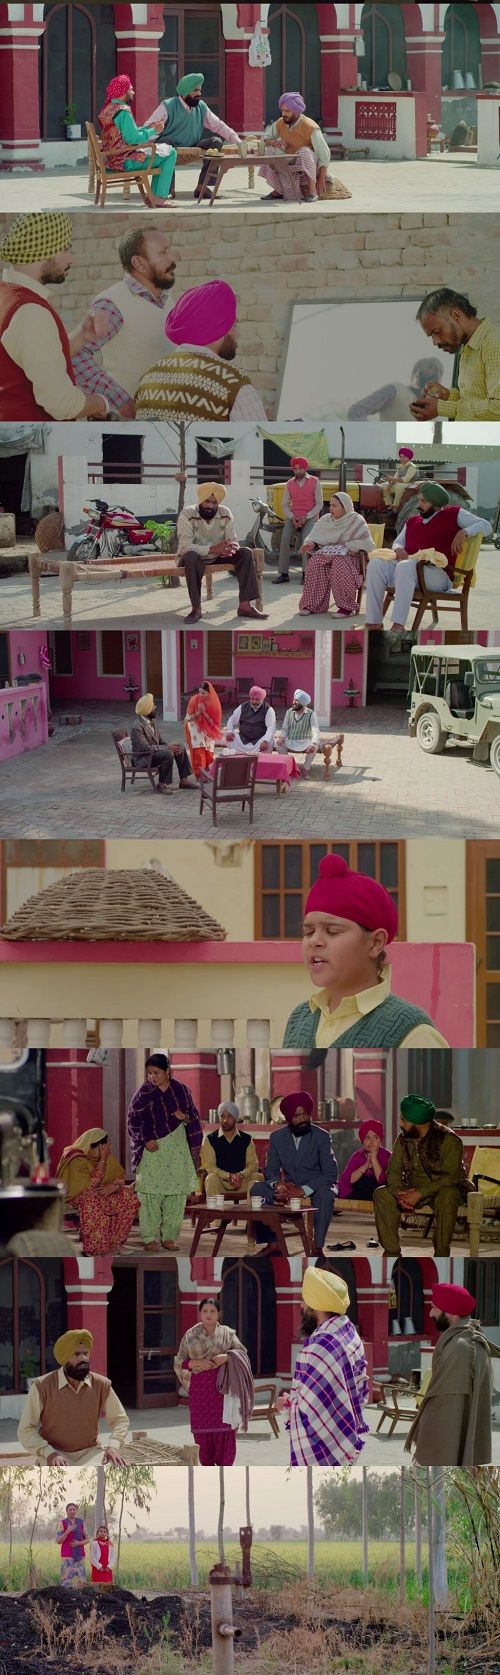 Kurmaiyan 2018 Punjabi 720p HDRip ESubs